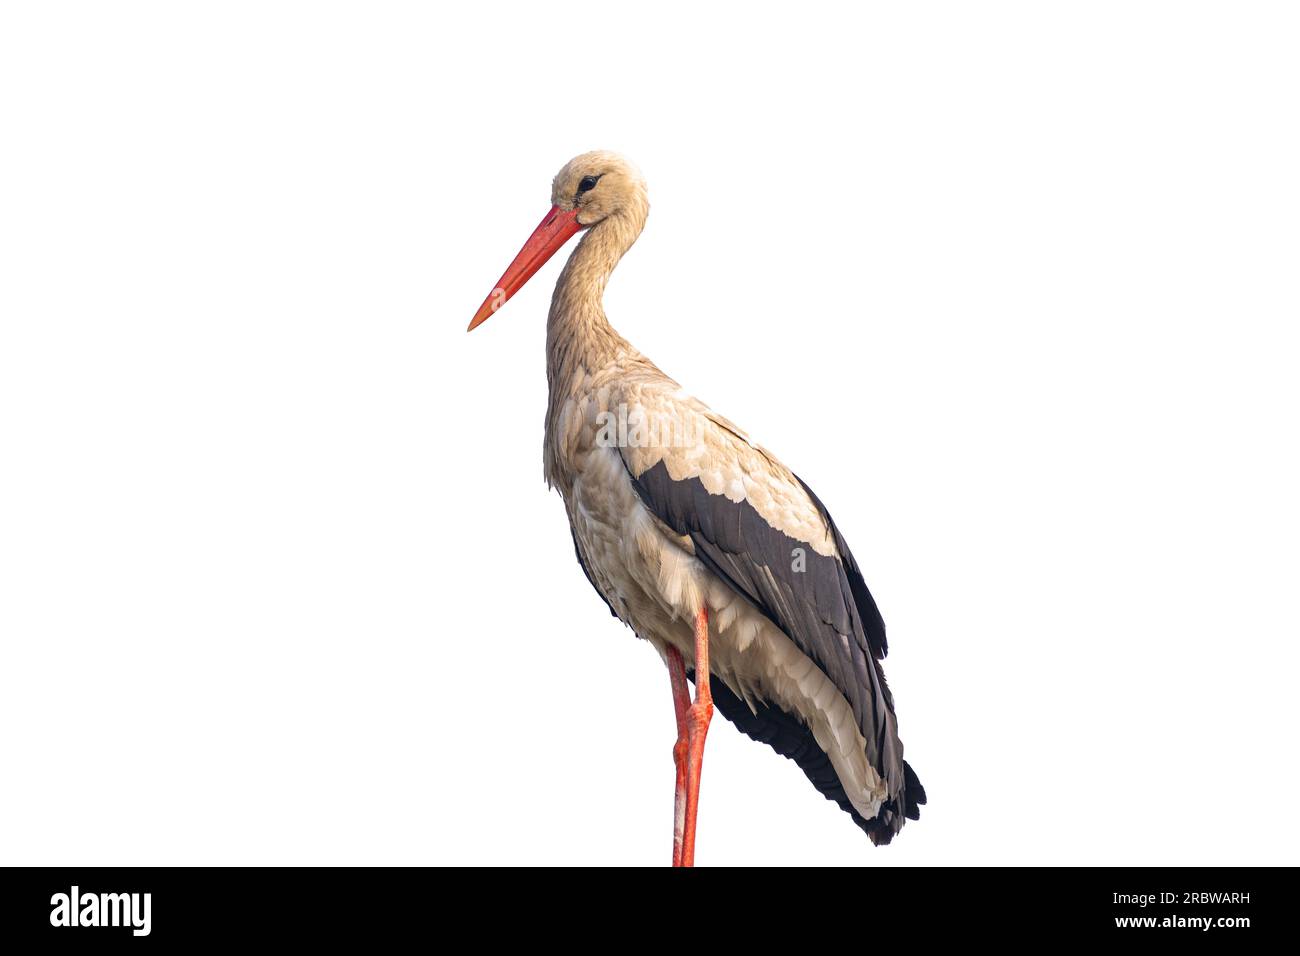 stork isolated on white background Stock Photo